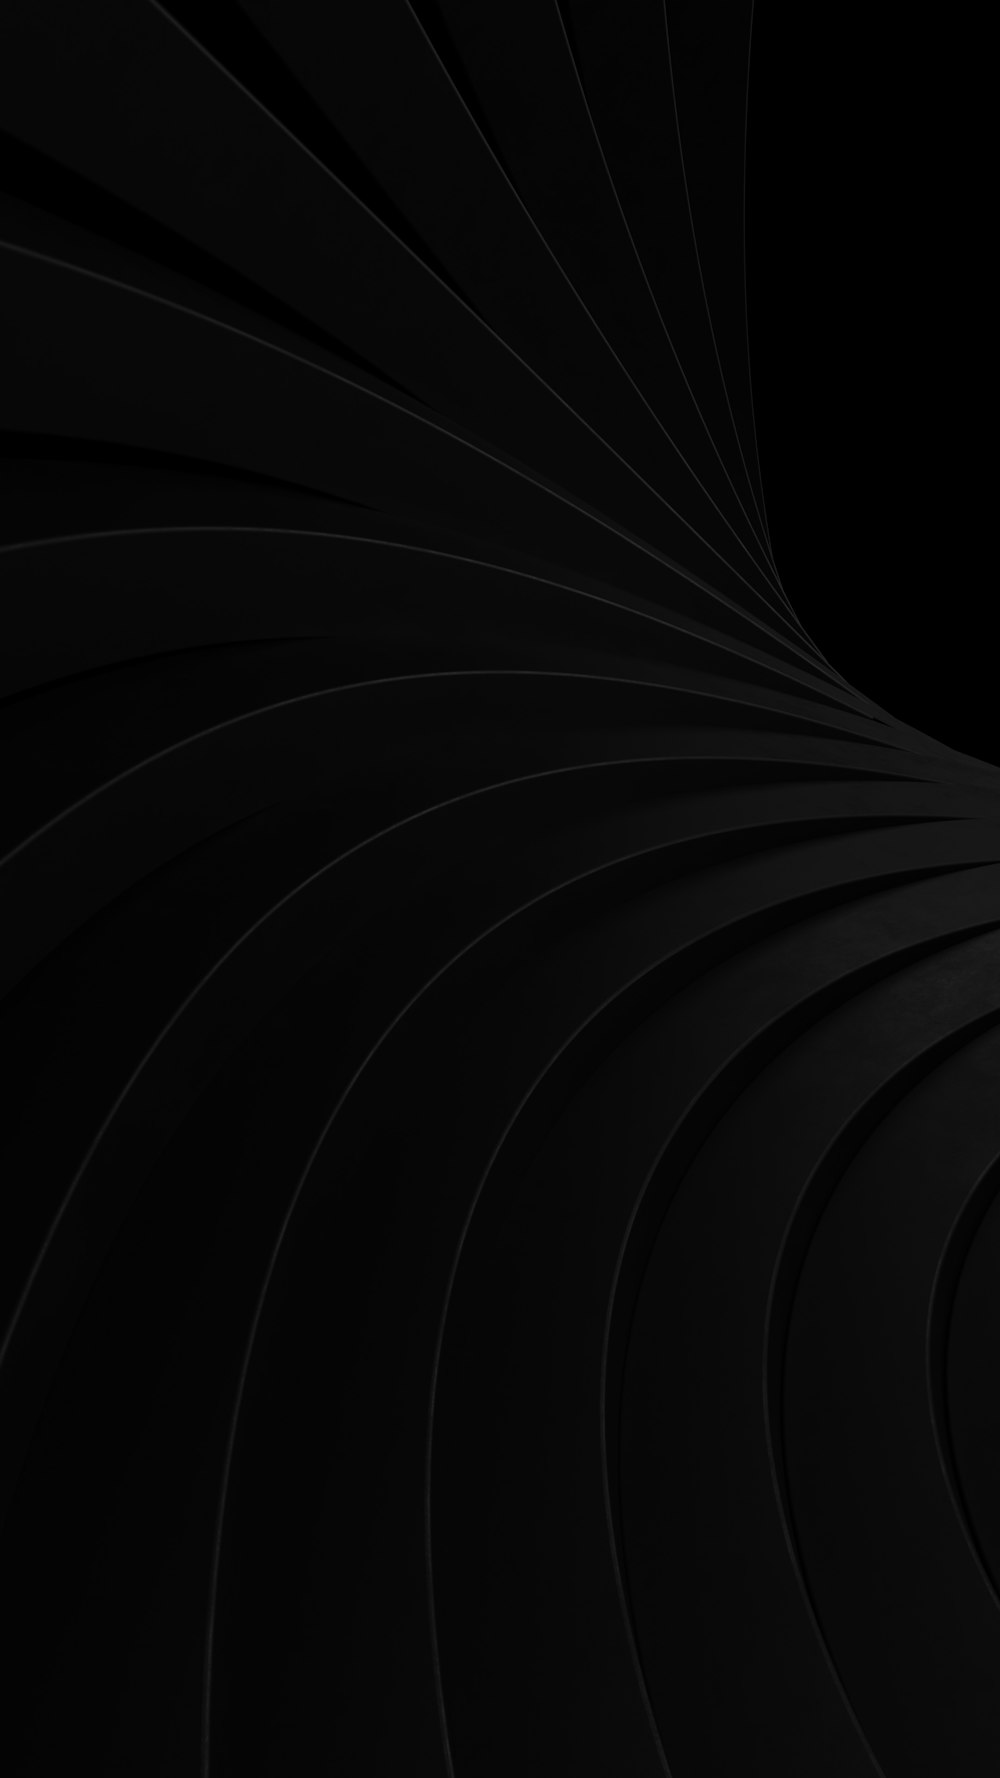 Hình nền đen: Nếu bạn yêu thích phong cách đơn giản, tối giản và sang trọng, thì hãy xem ngay hình nền đen này. Được làm từ họa tiết độc đáo và màu sắc trang nhã, chắc chắn sẽ làm bạn hài lòng với chất lượng và độ hiện đại.